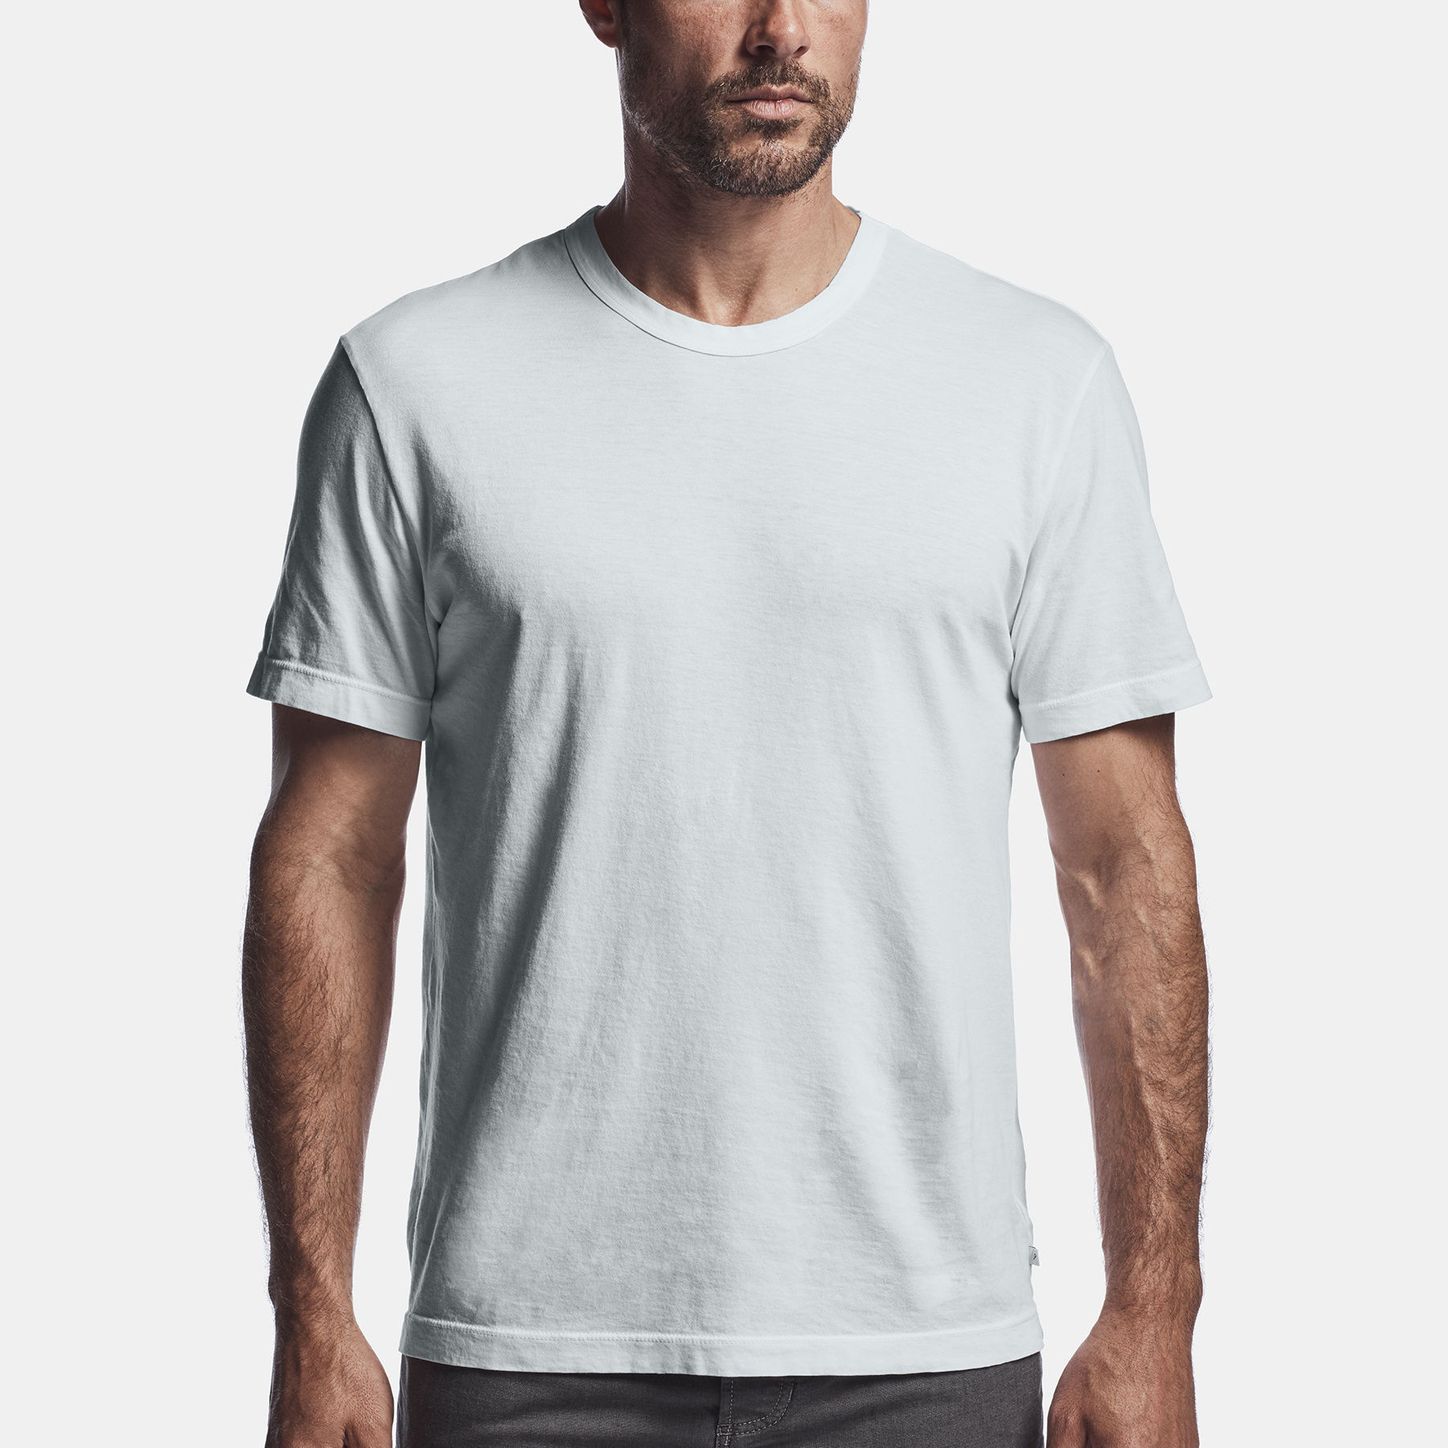 man in white tee shirt